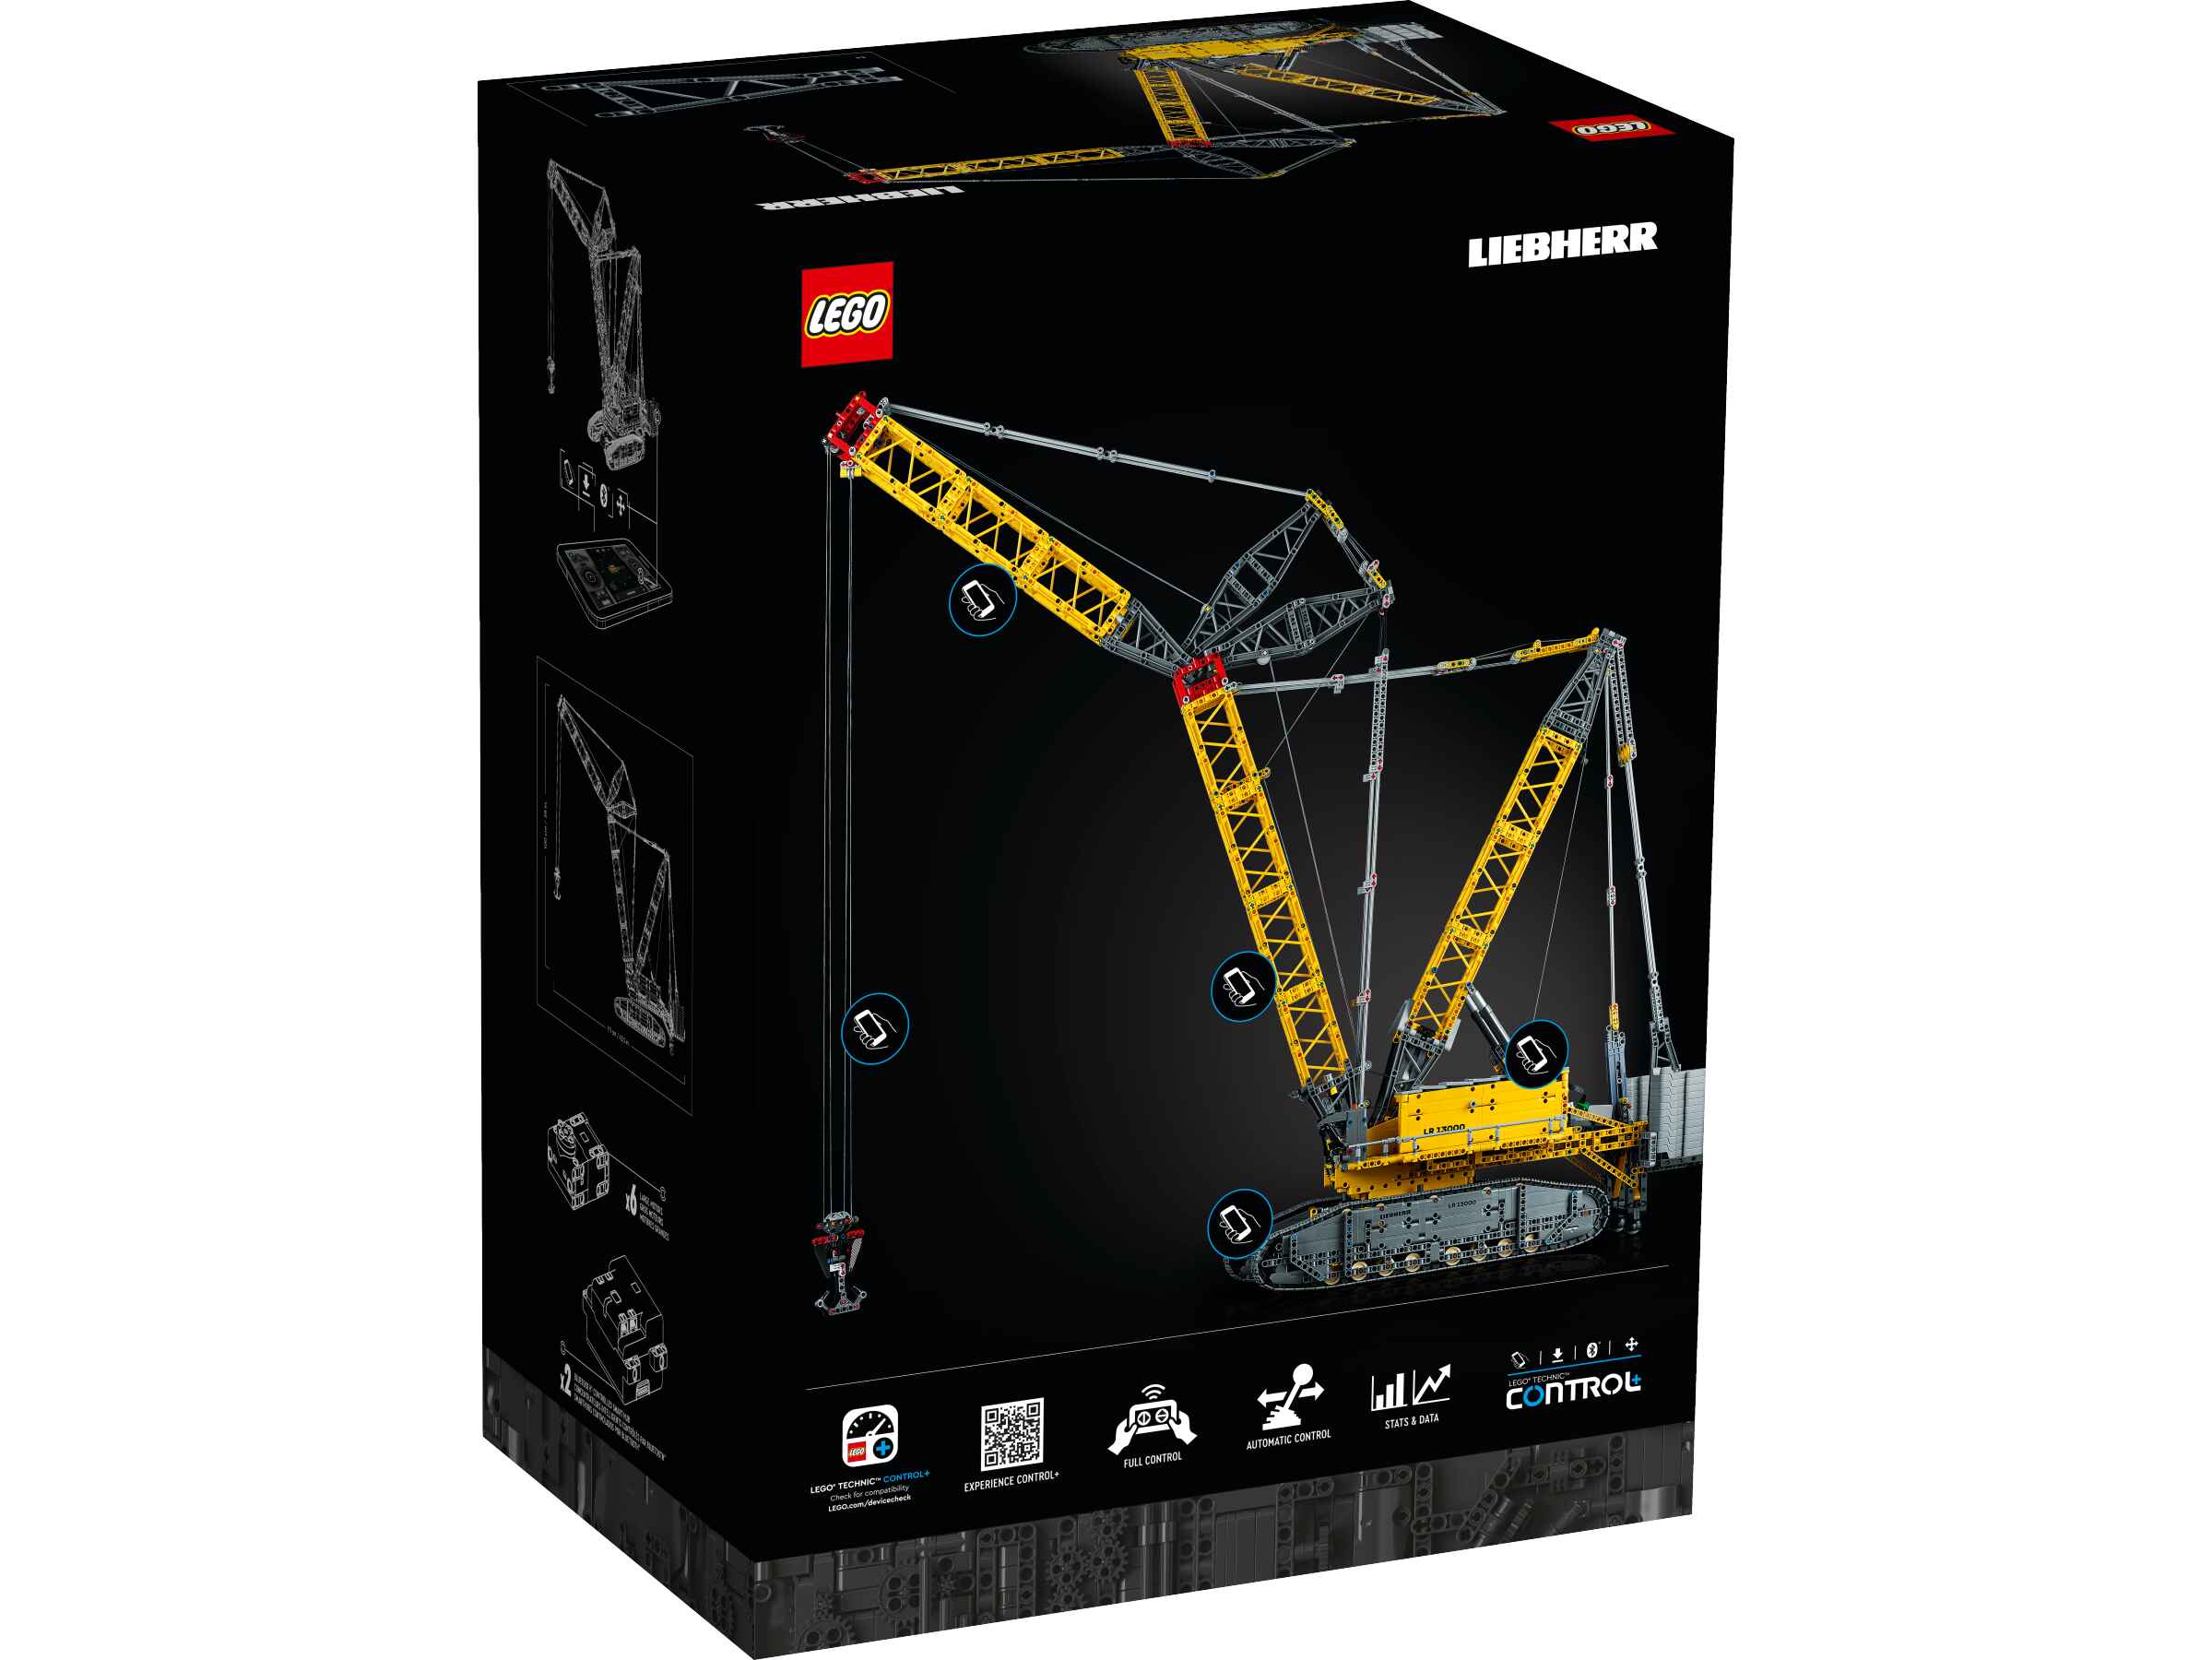 LEGO 42146 Technic Liebherr LR 13000 Raupenkran, Steuerung mit CONTROL+ App